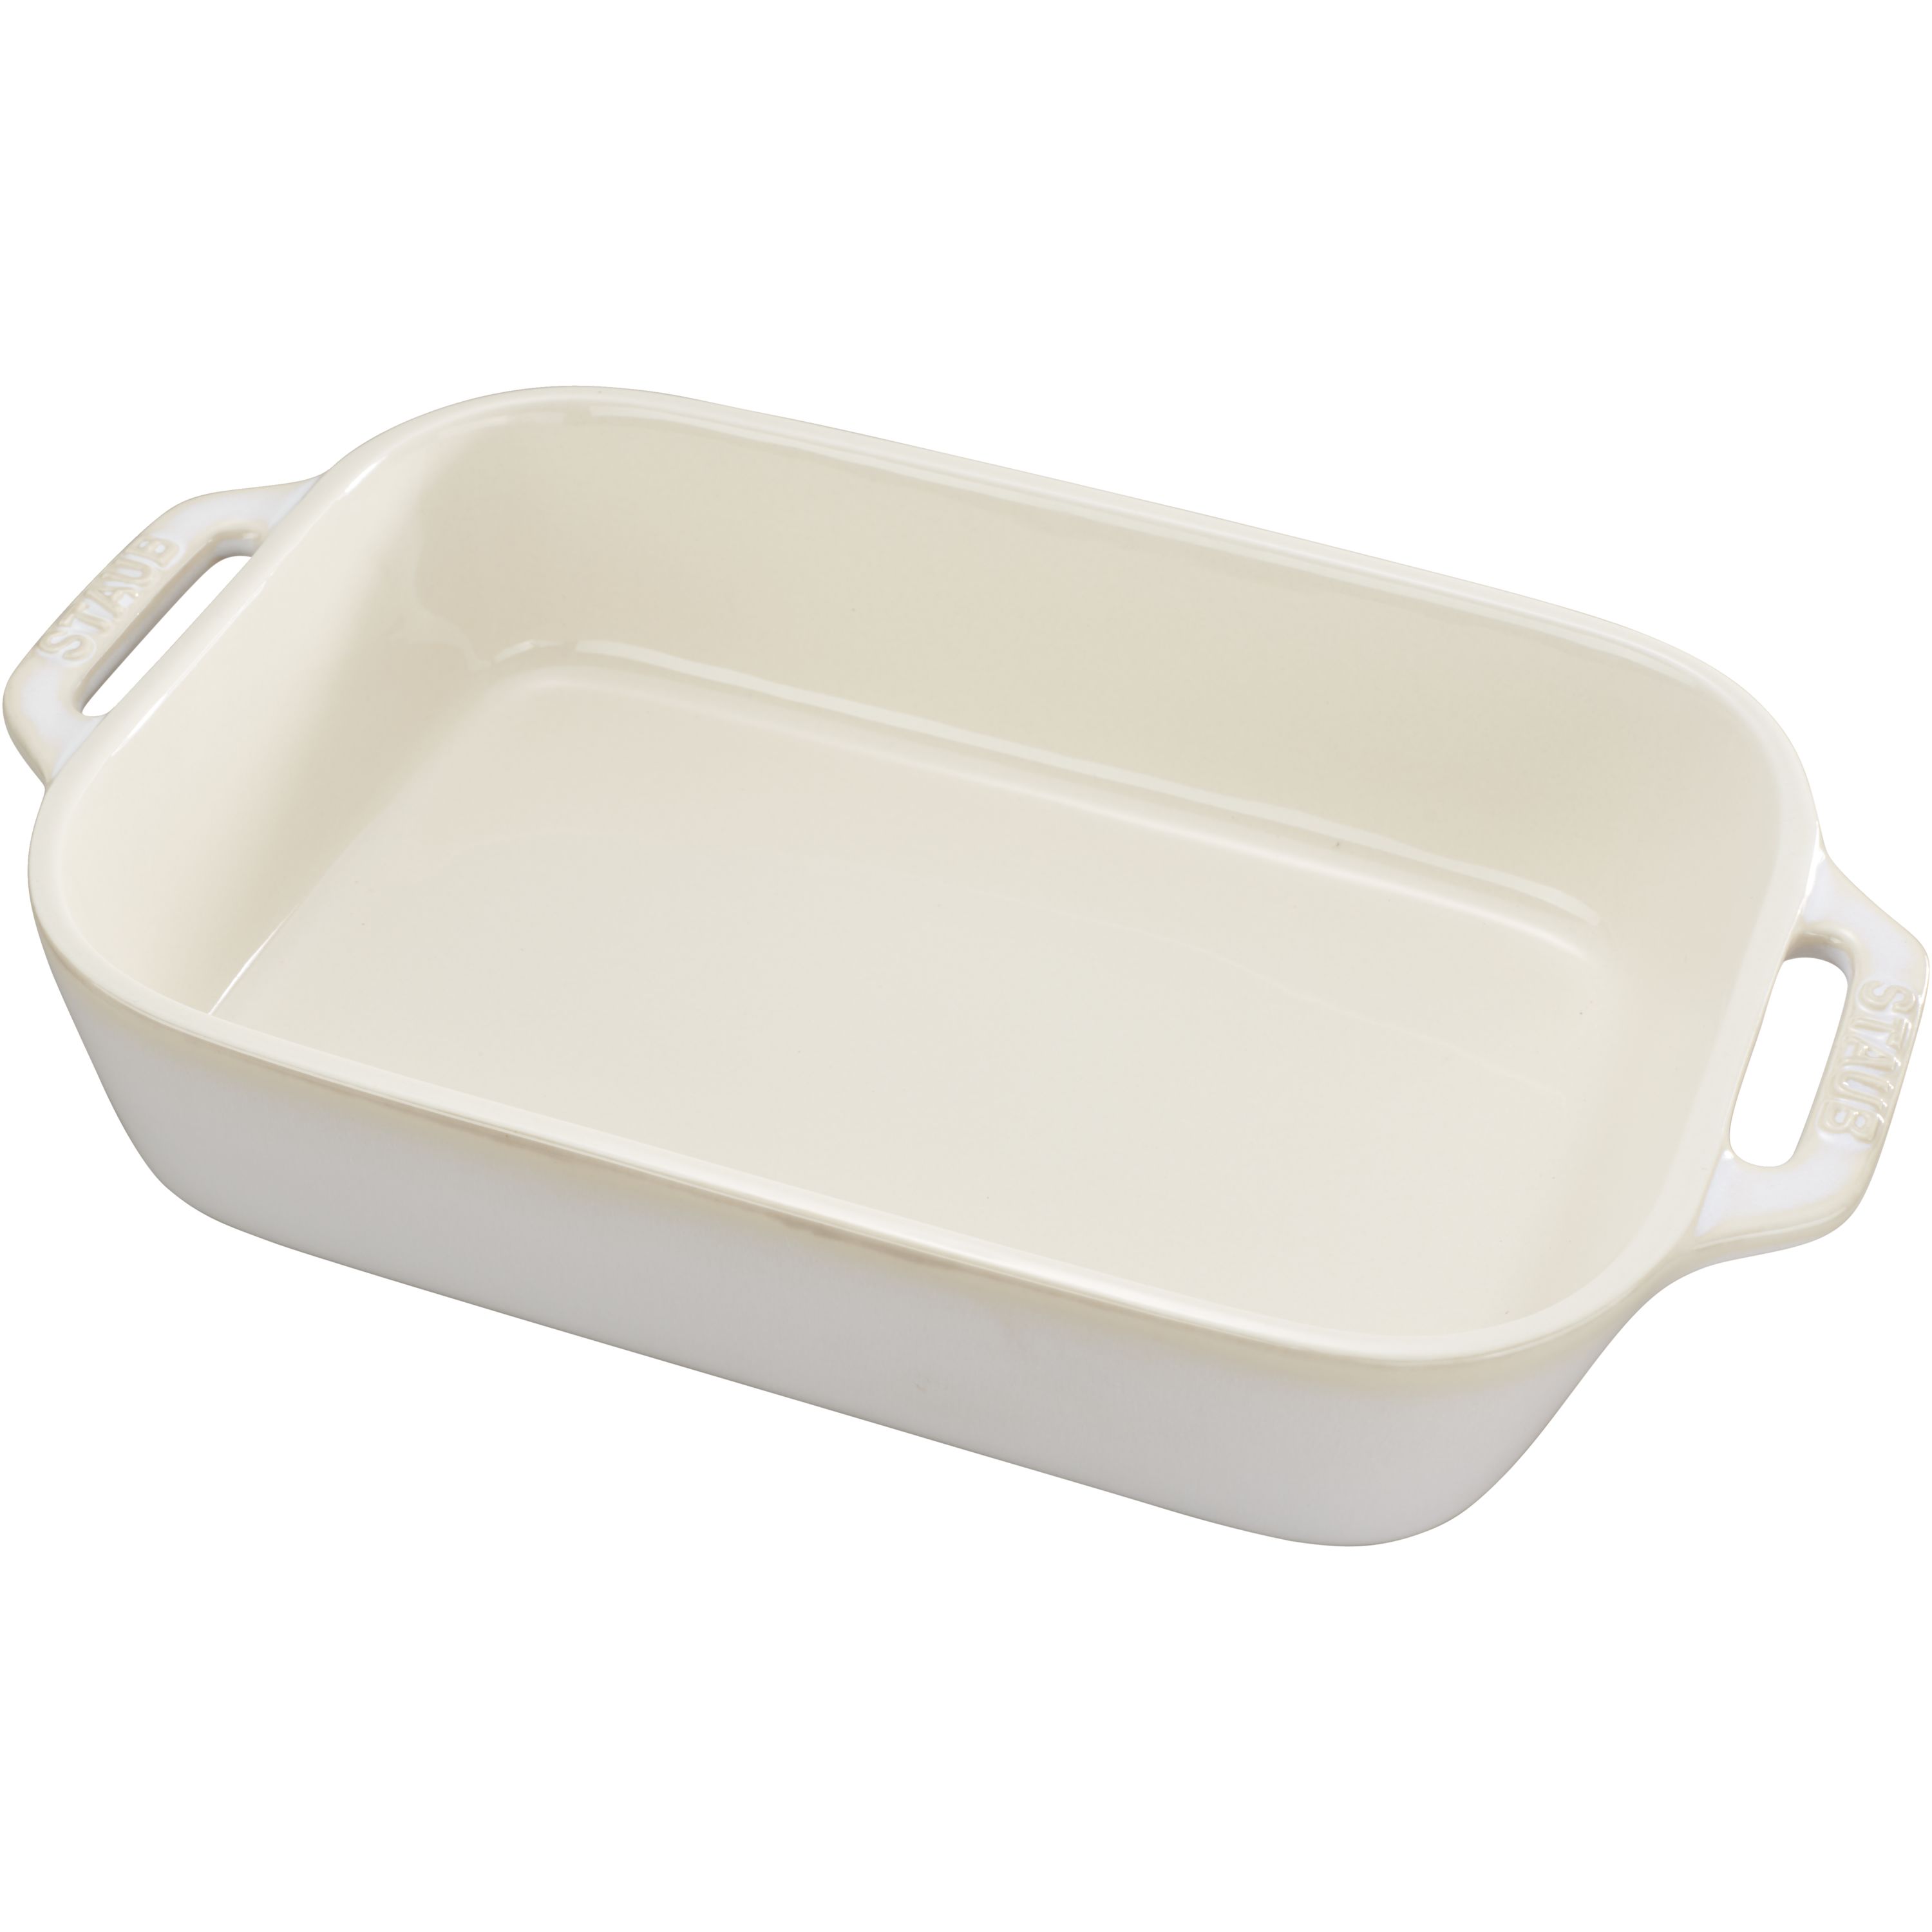 Staub Ceramic 10.5-inch X 7.5-inch Rectangular Baking Dish - White